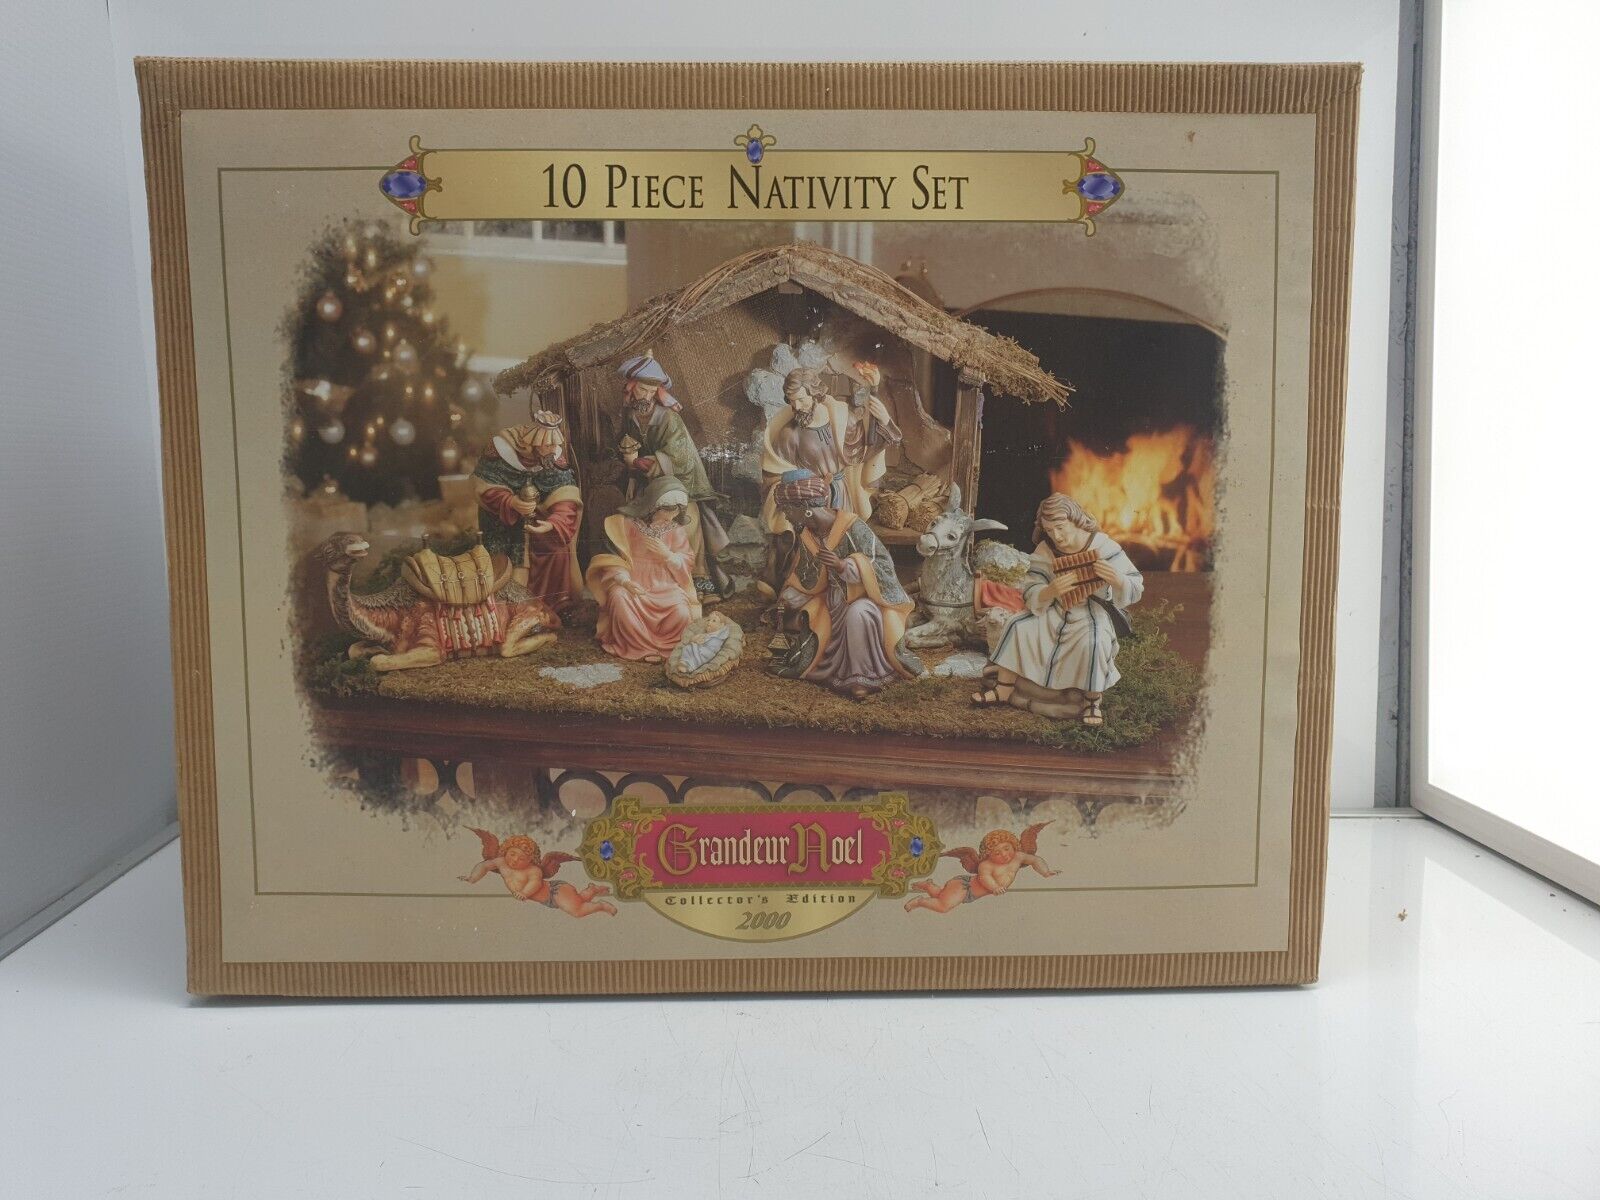 Grandeur Noel 2000 Collectors Edition 10 Piece Nativity Set 